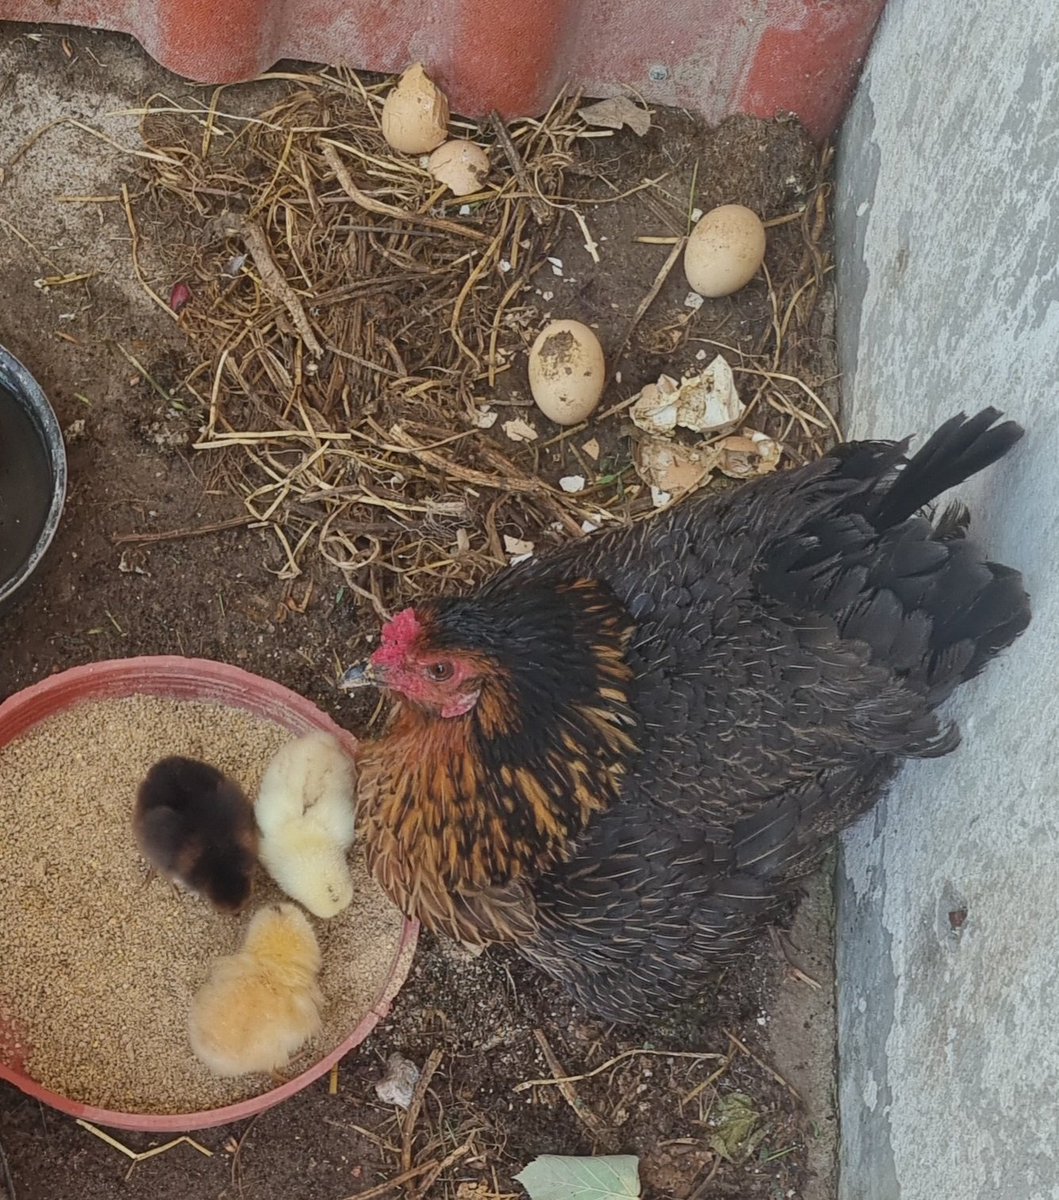 Gurk tavuk 5 yumurta üstünde 21 gün yattı, önce sarı civciv sonra diğer ikisi çıktı, bir tam gün annelerinin altından çıkmadılar, anne bugün diğer 2 yumurtayı bırakıp kalktı, civciv yeminin önüne gelip gagasıyla yemlere vurdu, pıp pıp diye seslendi, civcivler yemeye başladı.